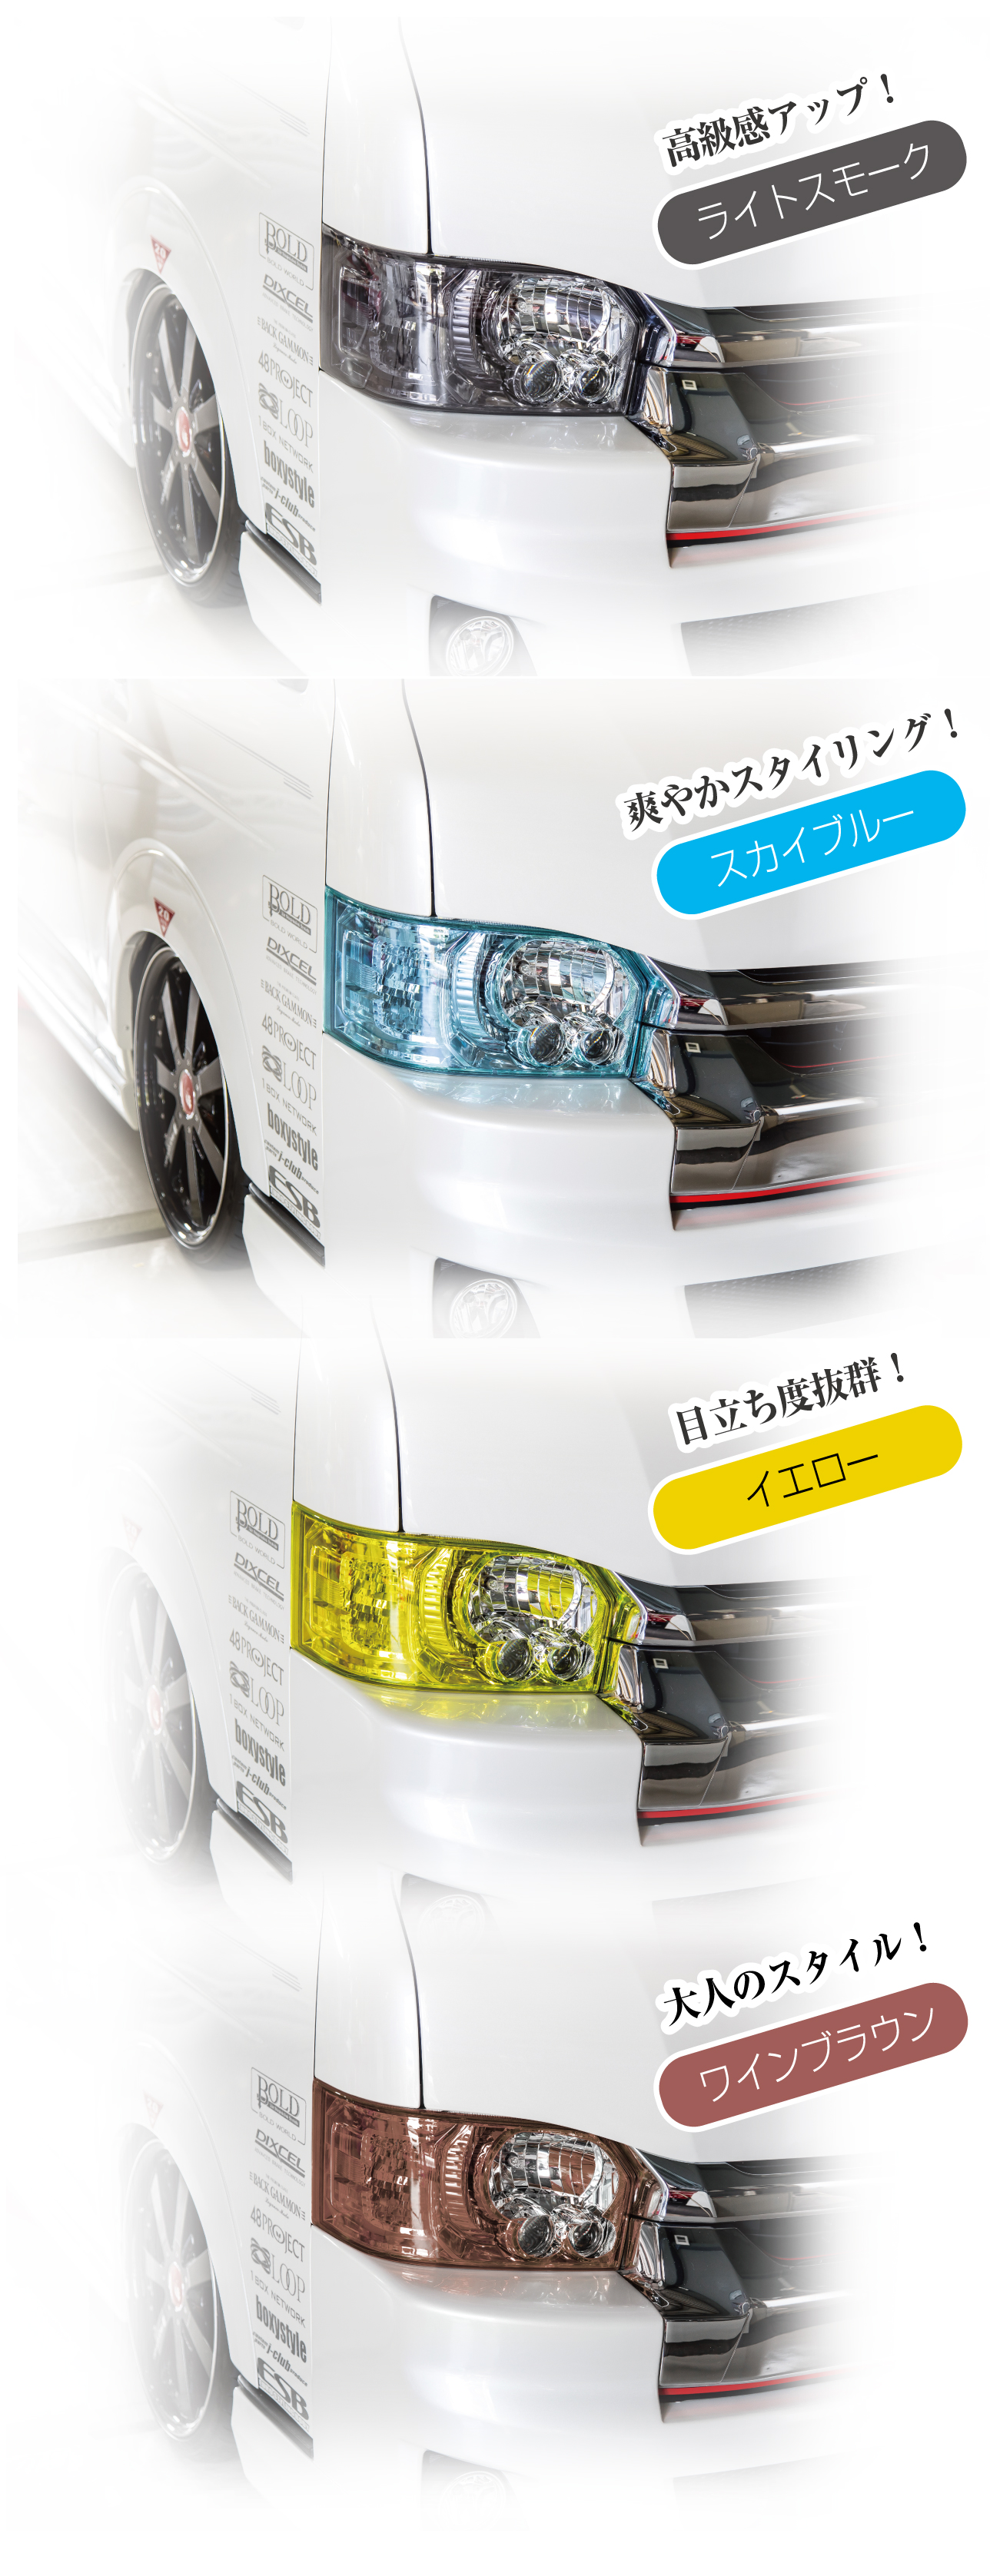 日本最大の ハイエース ヘッドライトカバー ライトスモーク 200系 4型